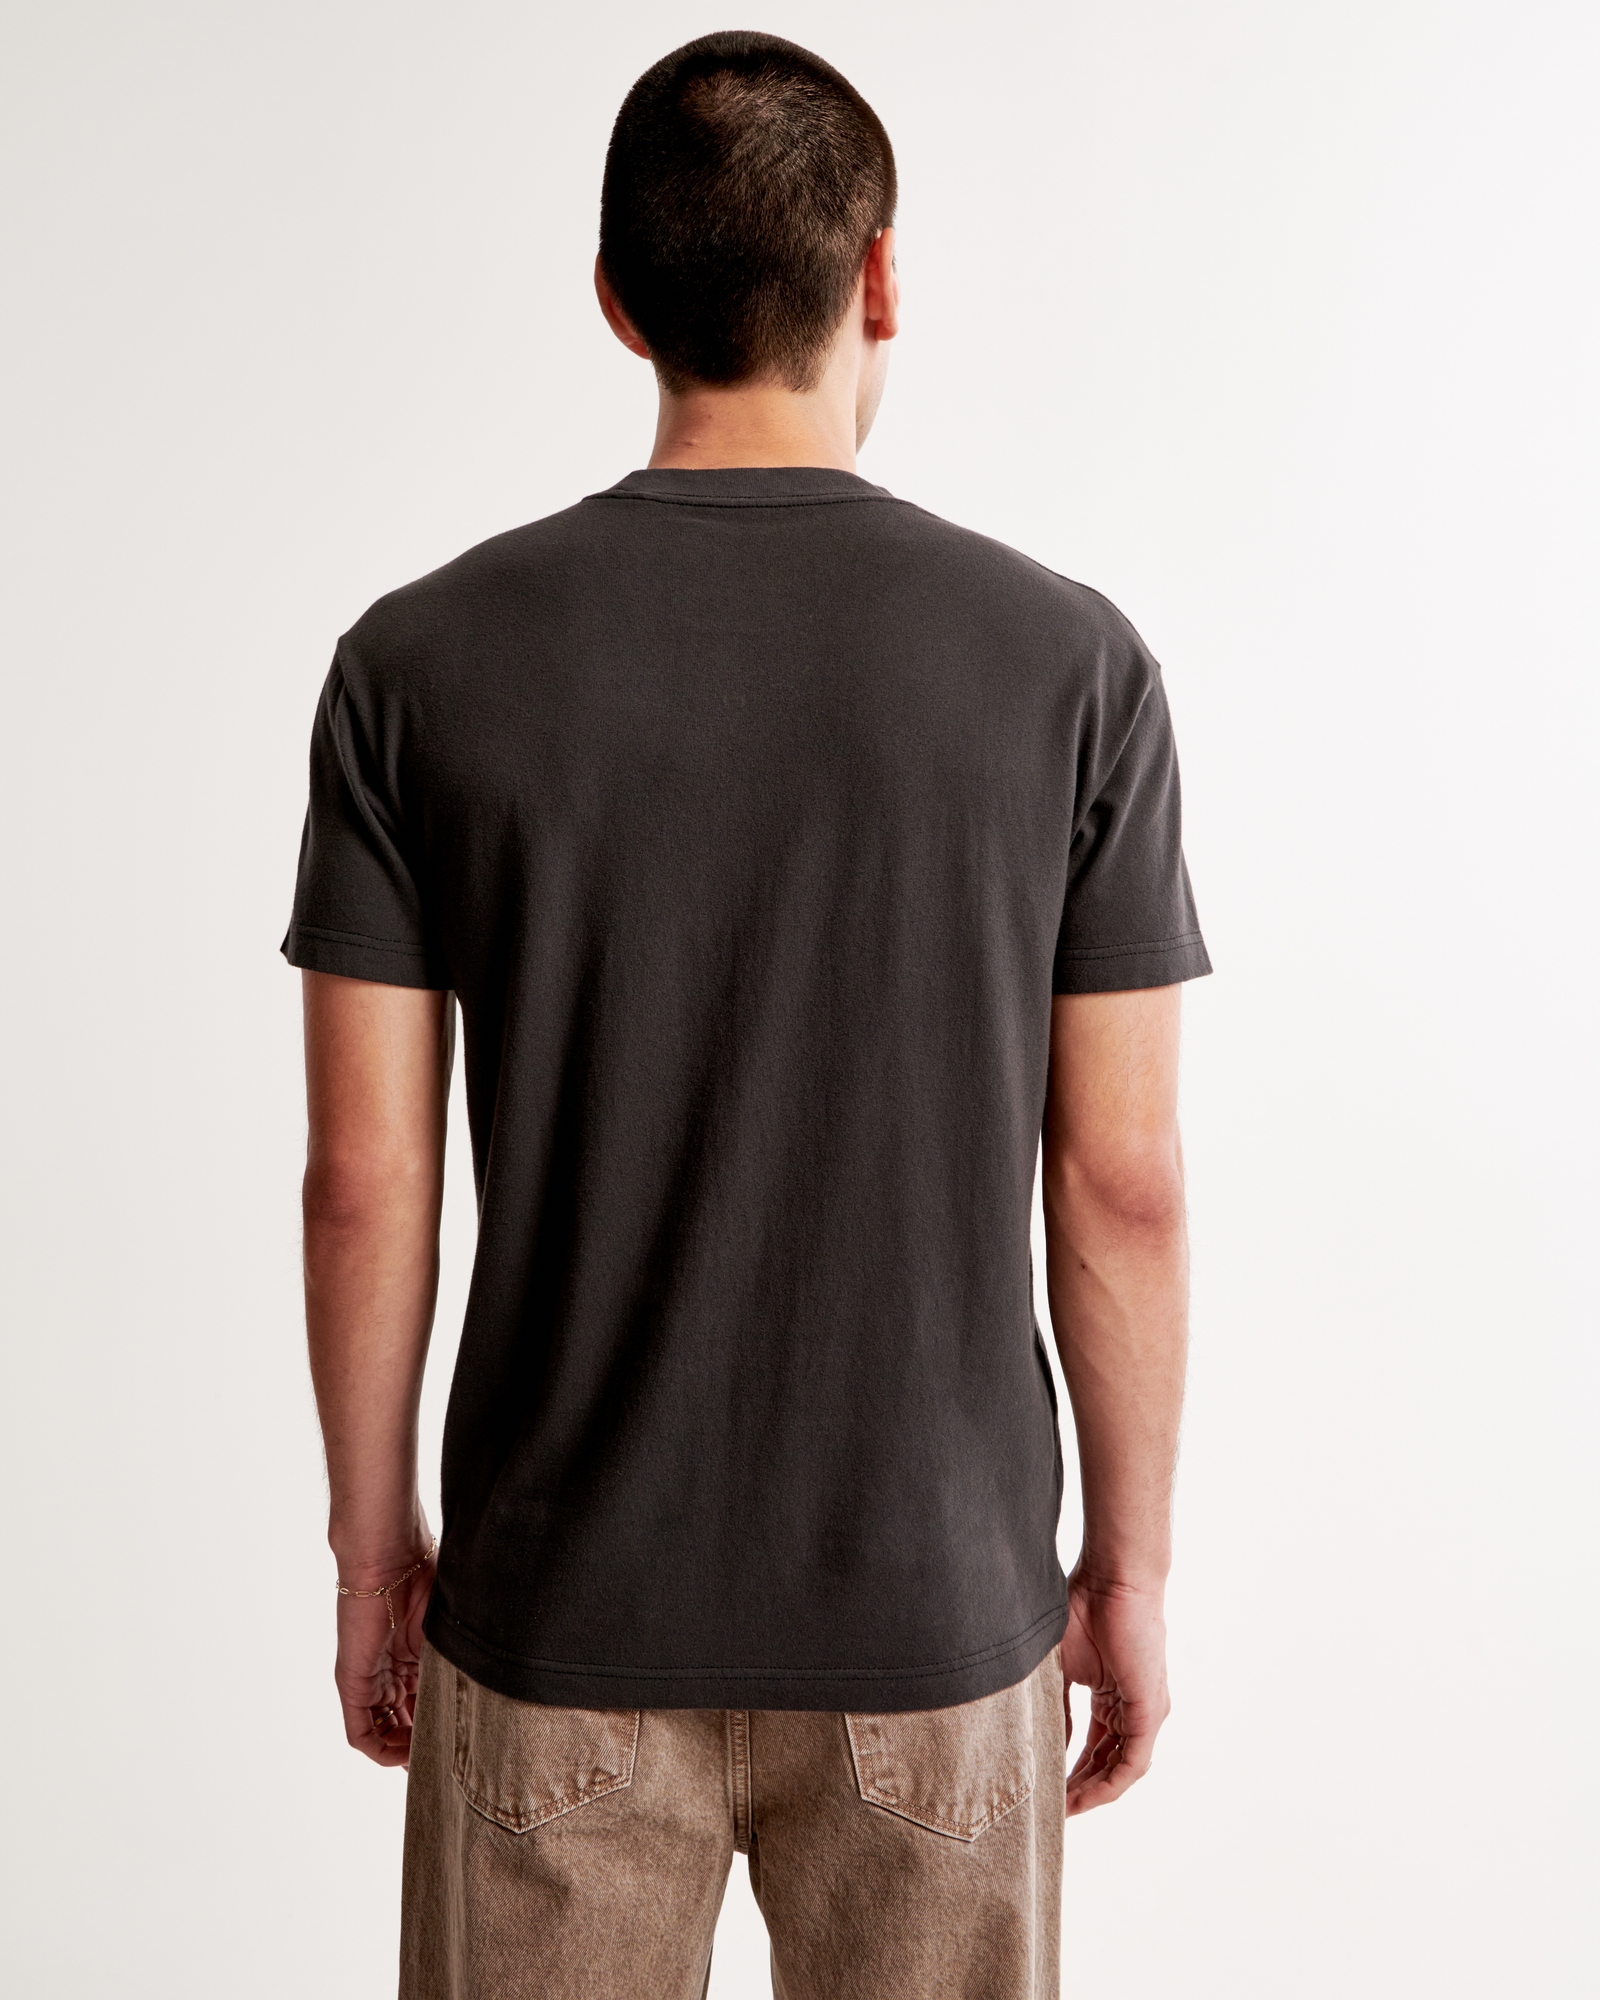 Carolina Panthers Abstract Shirt T-Shirt